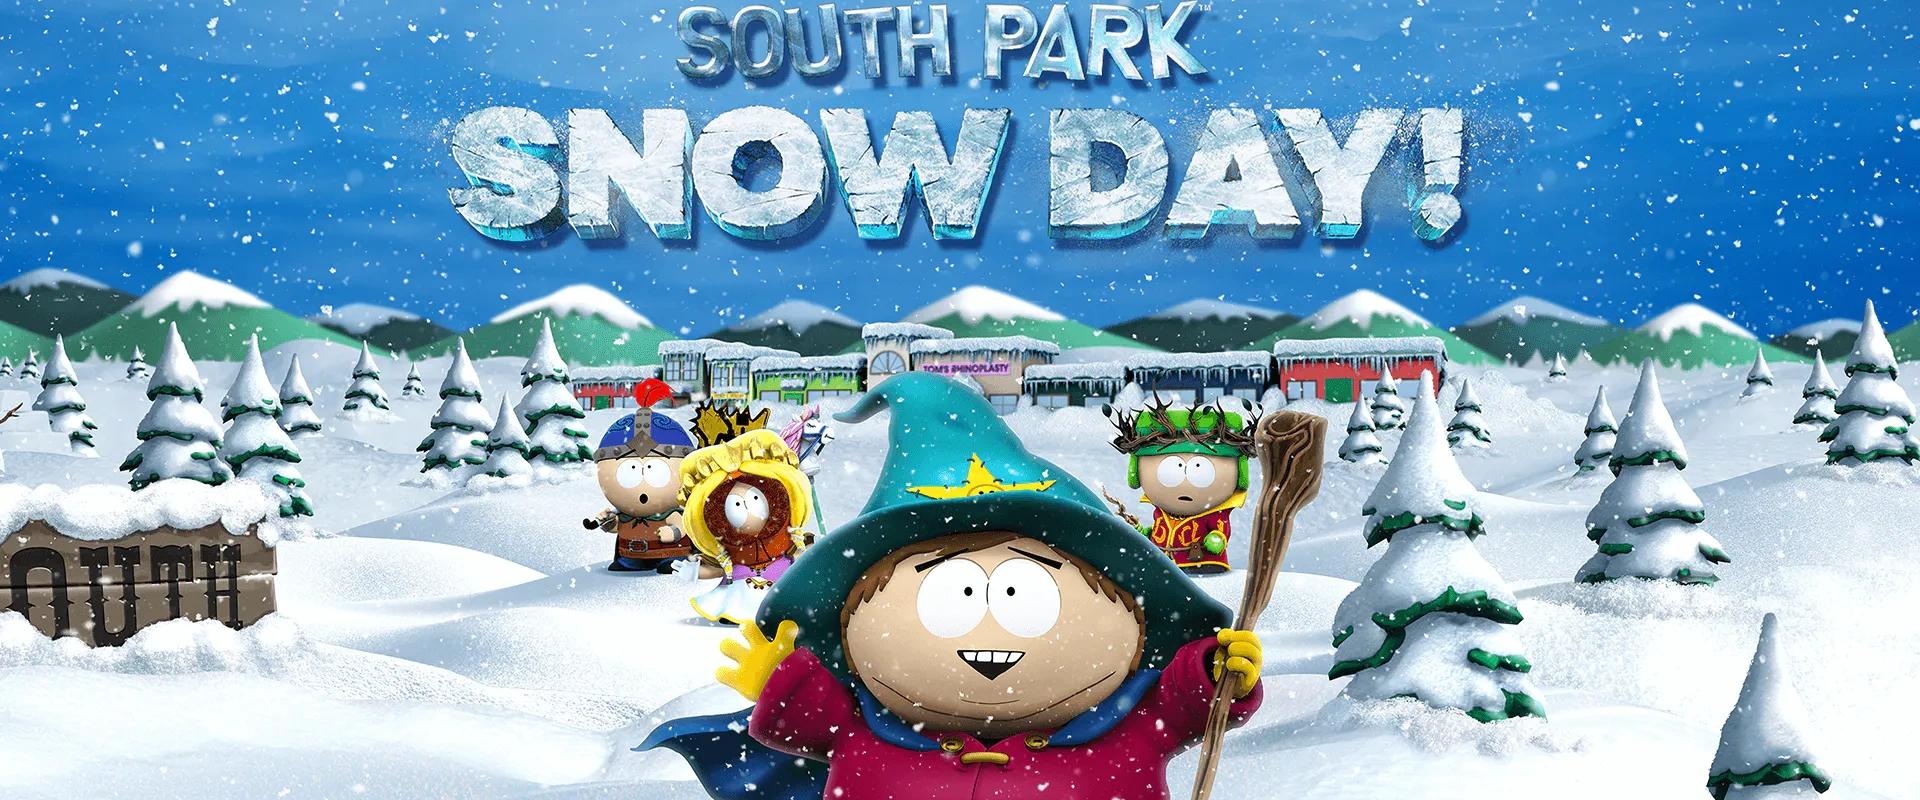 Új trailer fedte fel a South Park: Snow Day megjelenési dátumát